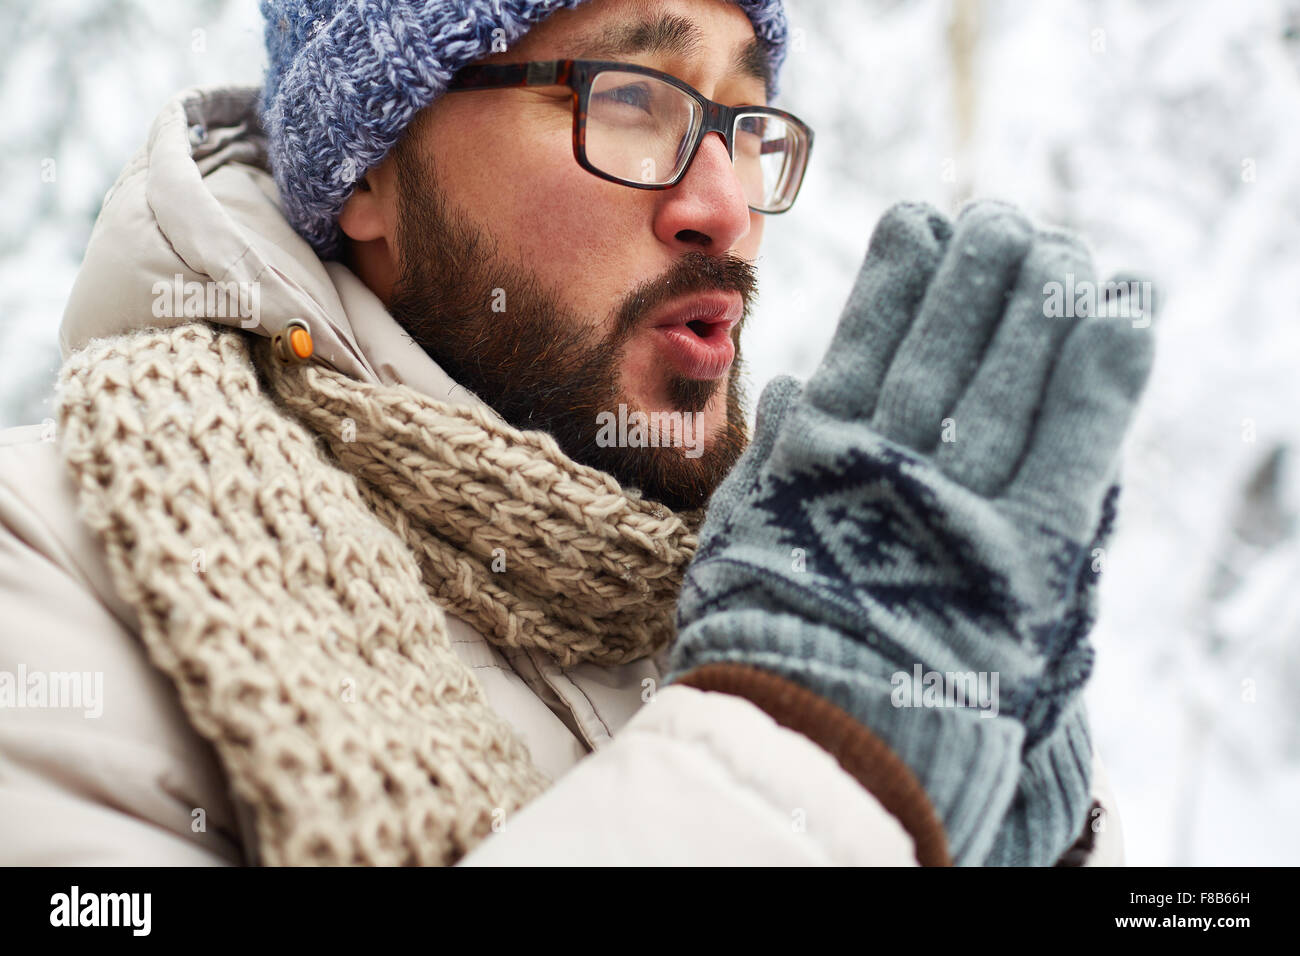 Asiaten in Winterwear und versucht, seine Hände außerhalb warme Handschuhe Stockfoto